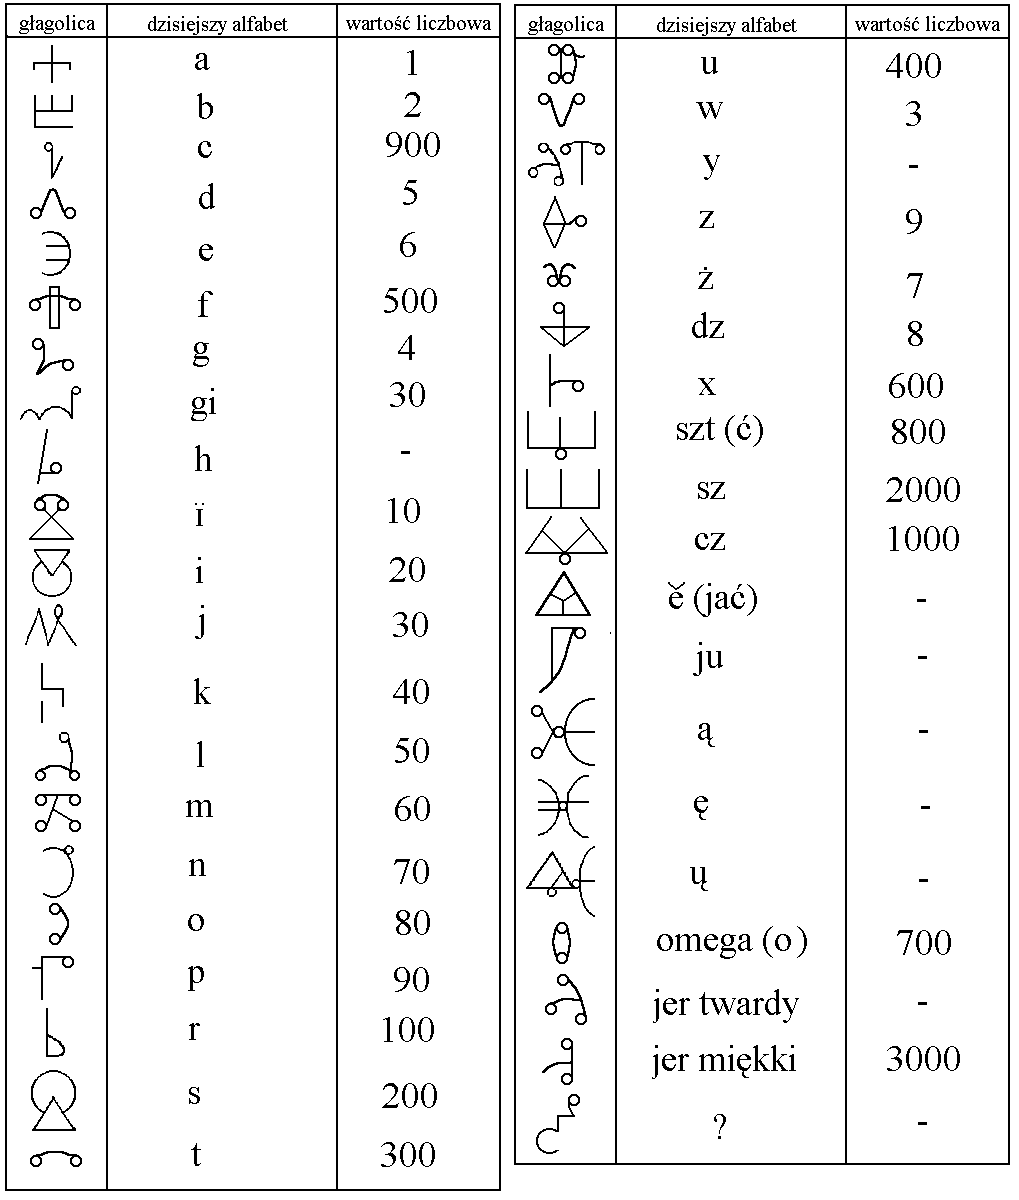 Głagolica – najstarszy alfabet słowiański